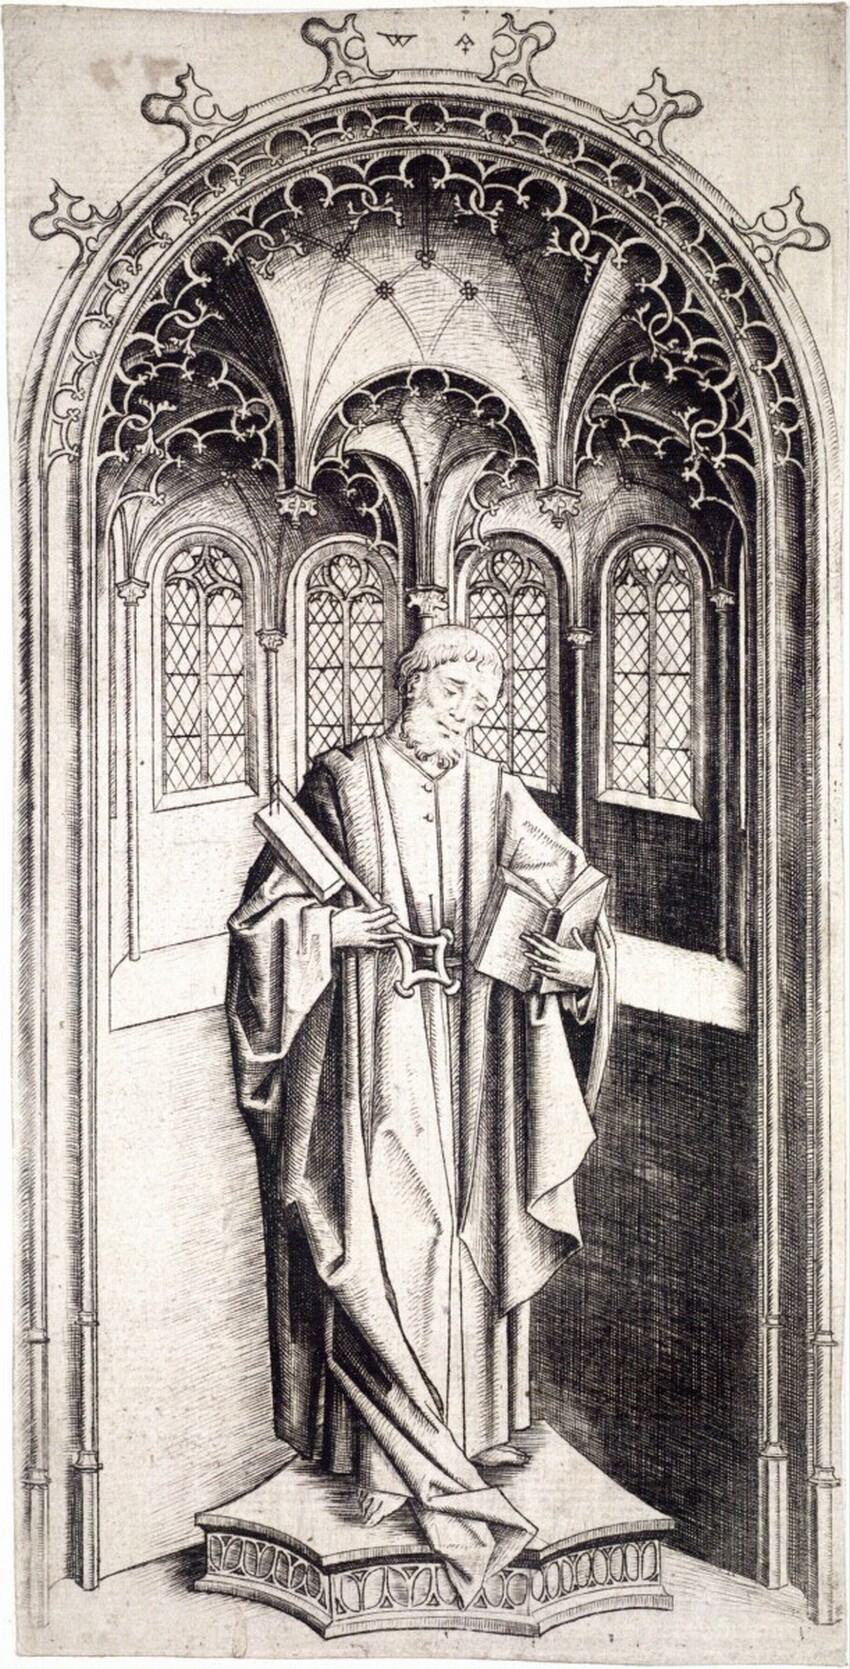 Meister WA (östliche Niederlande, tätig 1465 - 1490) | Hl. Petrus | Displayed motifs: Clothing, Person, Window, Human face, Man, 